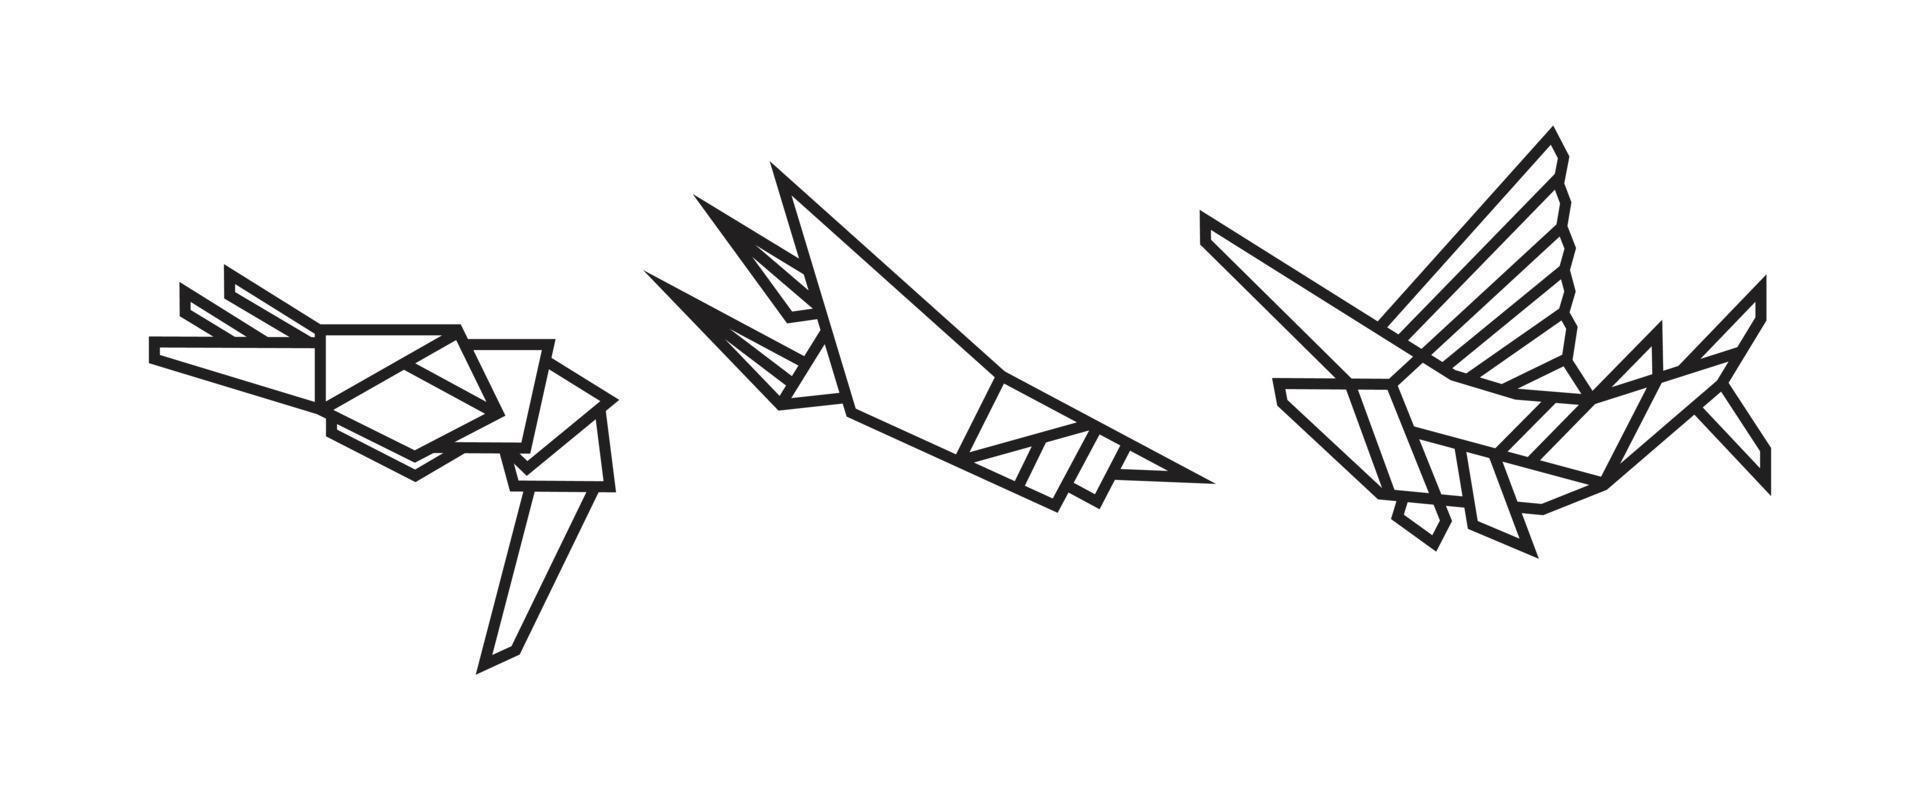 illustrazioni di pesce in stile origami vettore